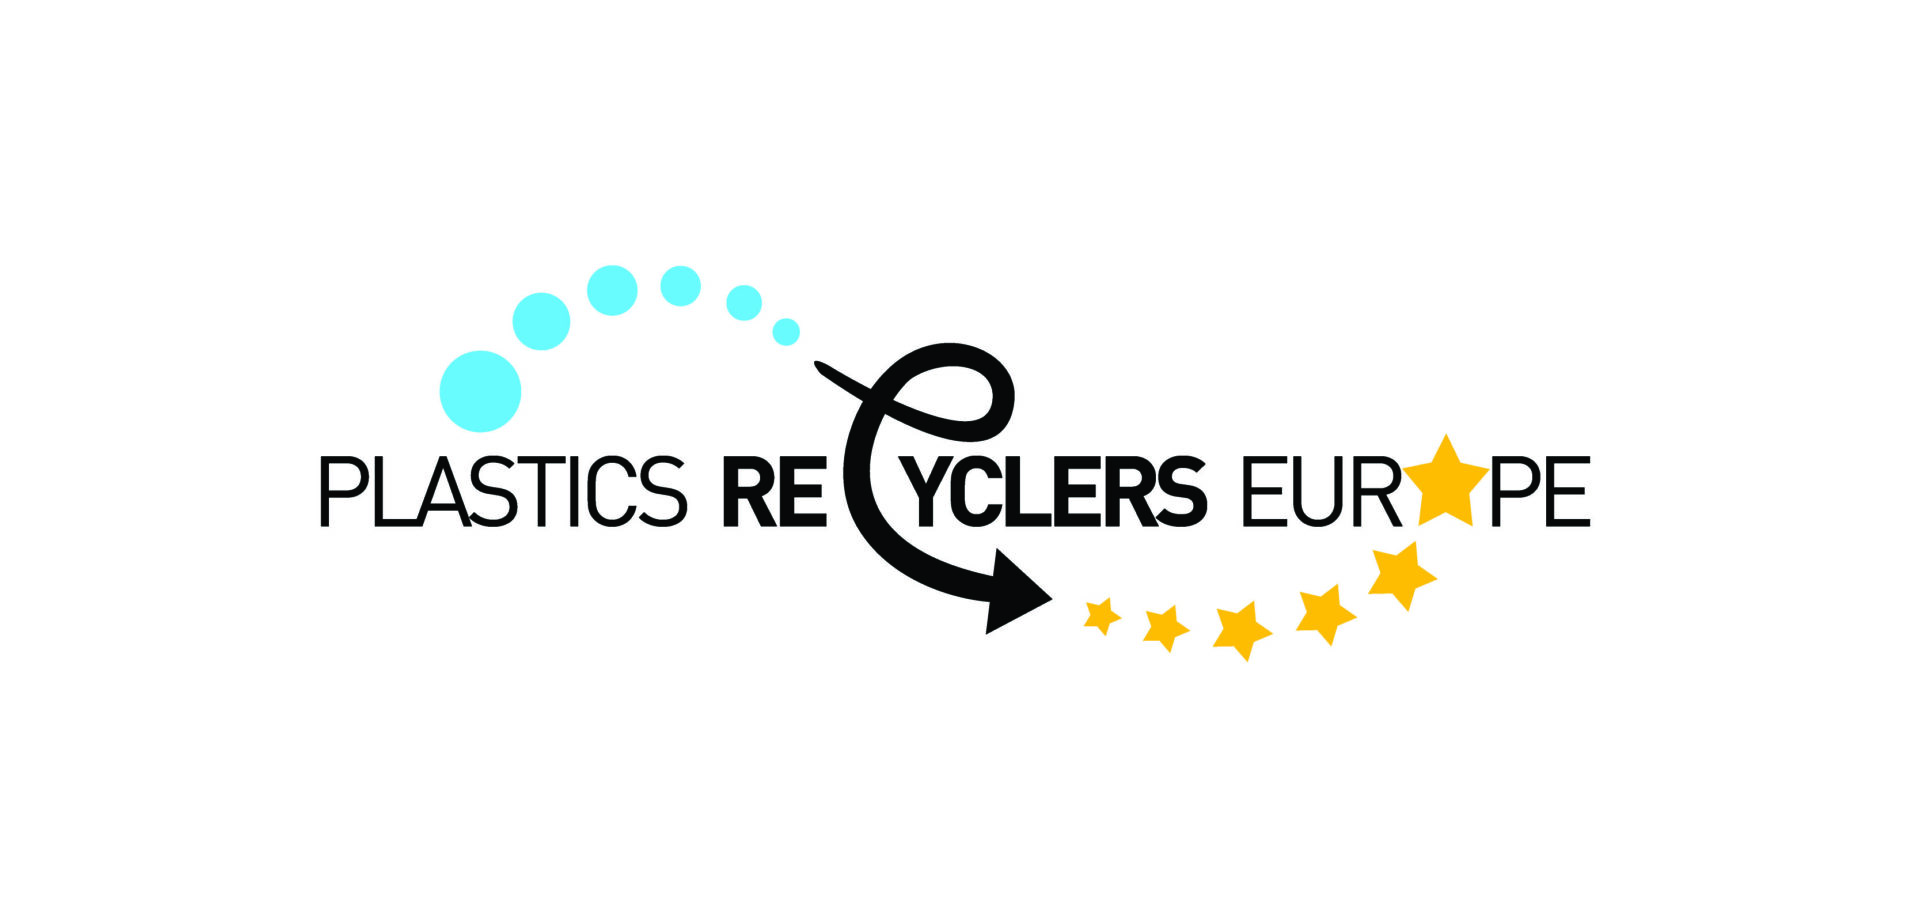 Plastics Recyclers Europe unterstützt neues Circular Economy Paket der Europäischen Kommission